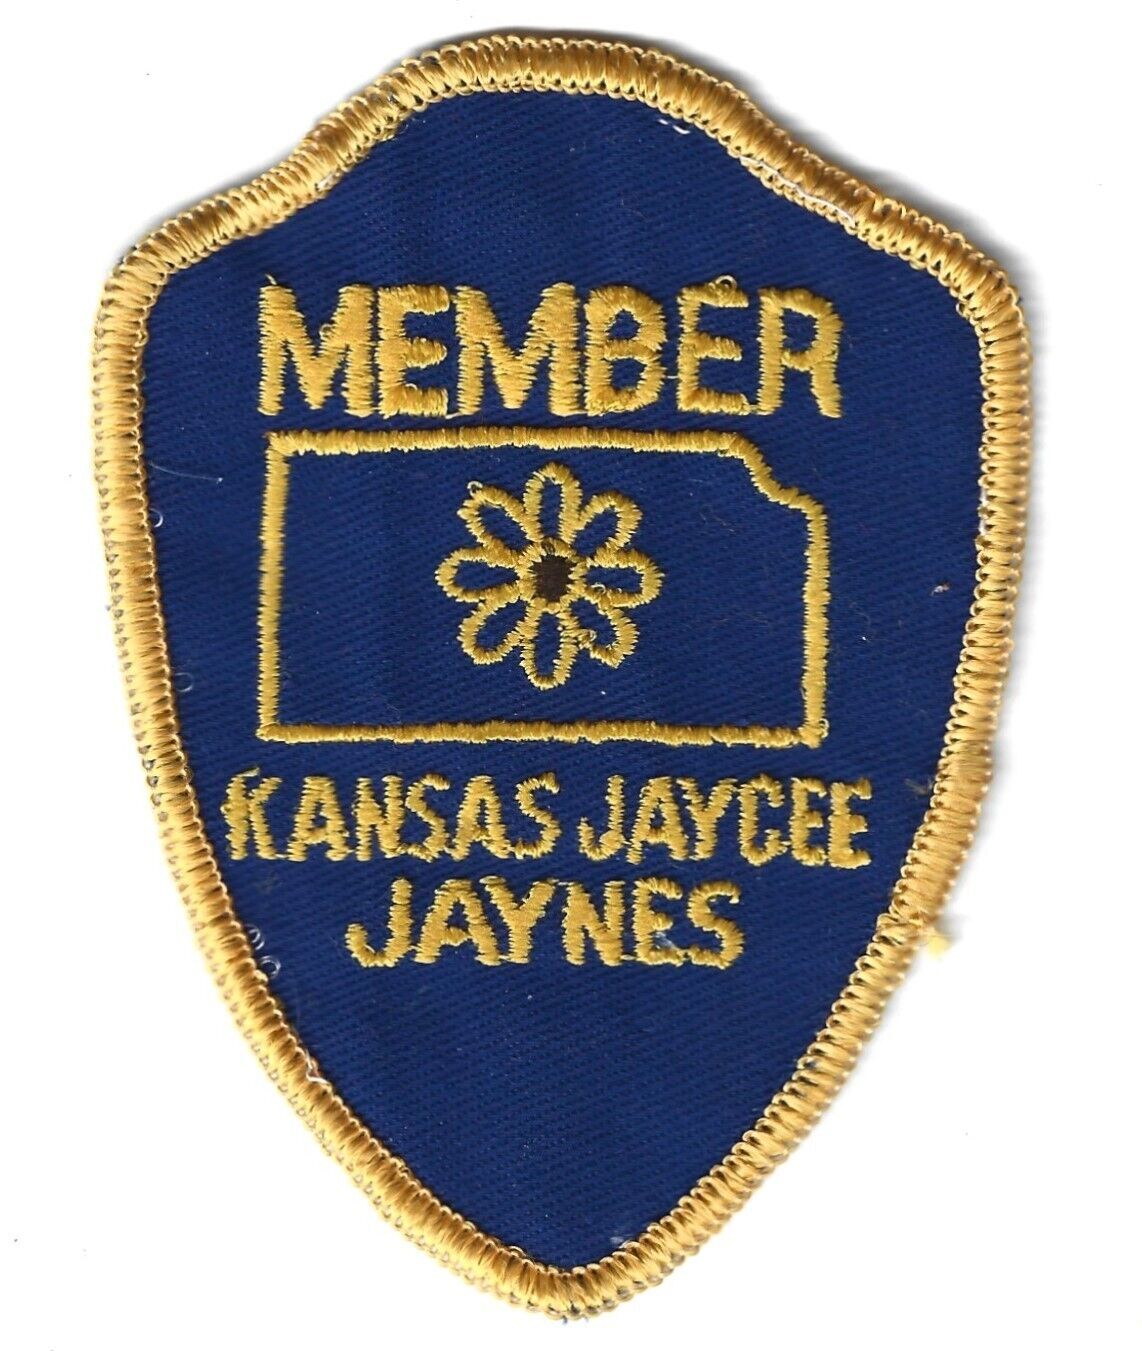 Kansas Jaycee Jaynes Member Patch - Late 1970's